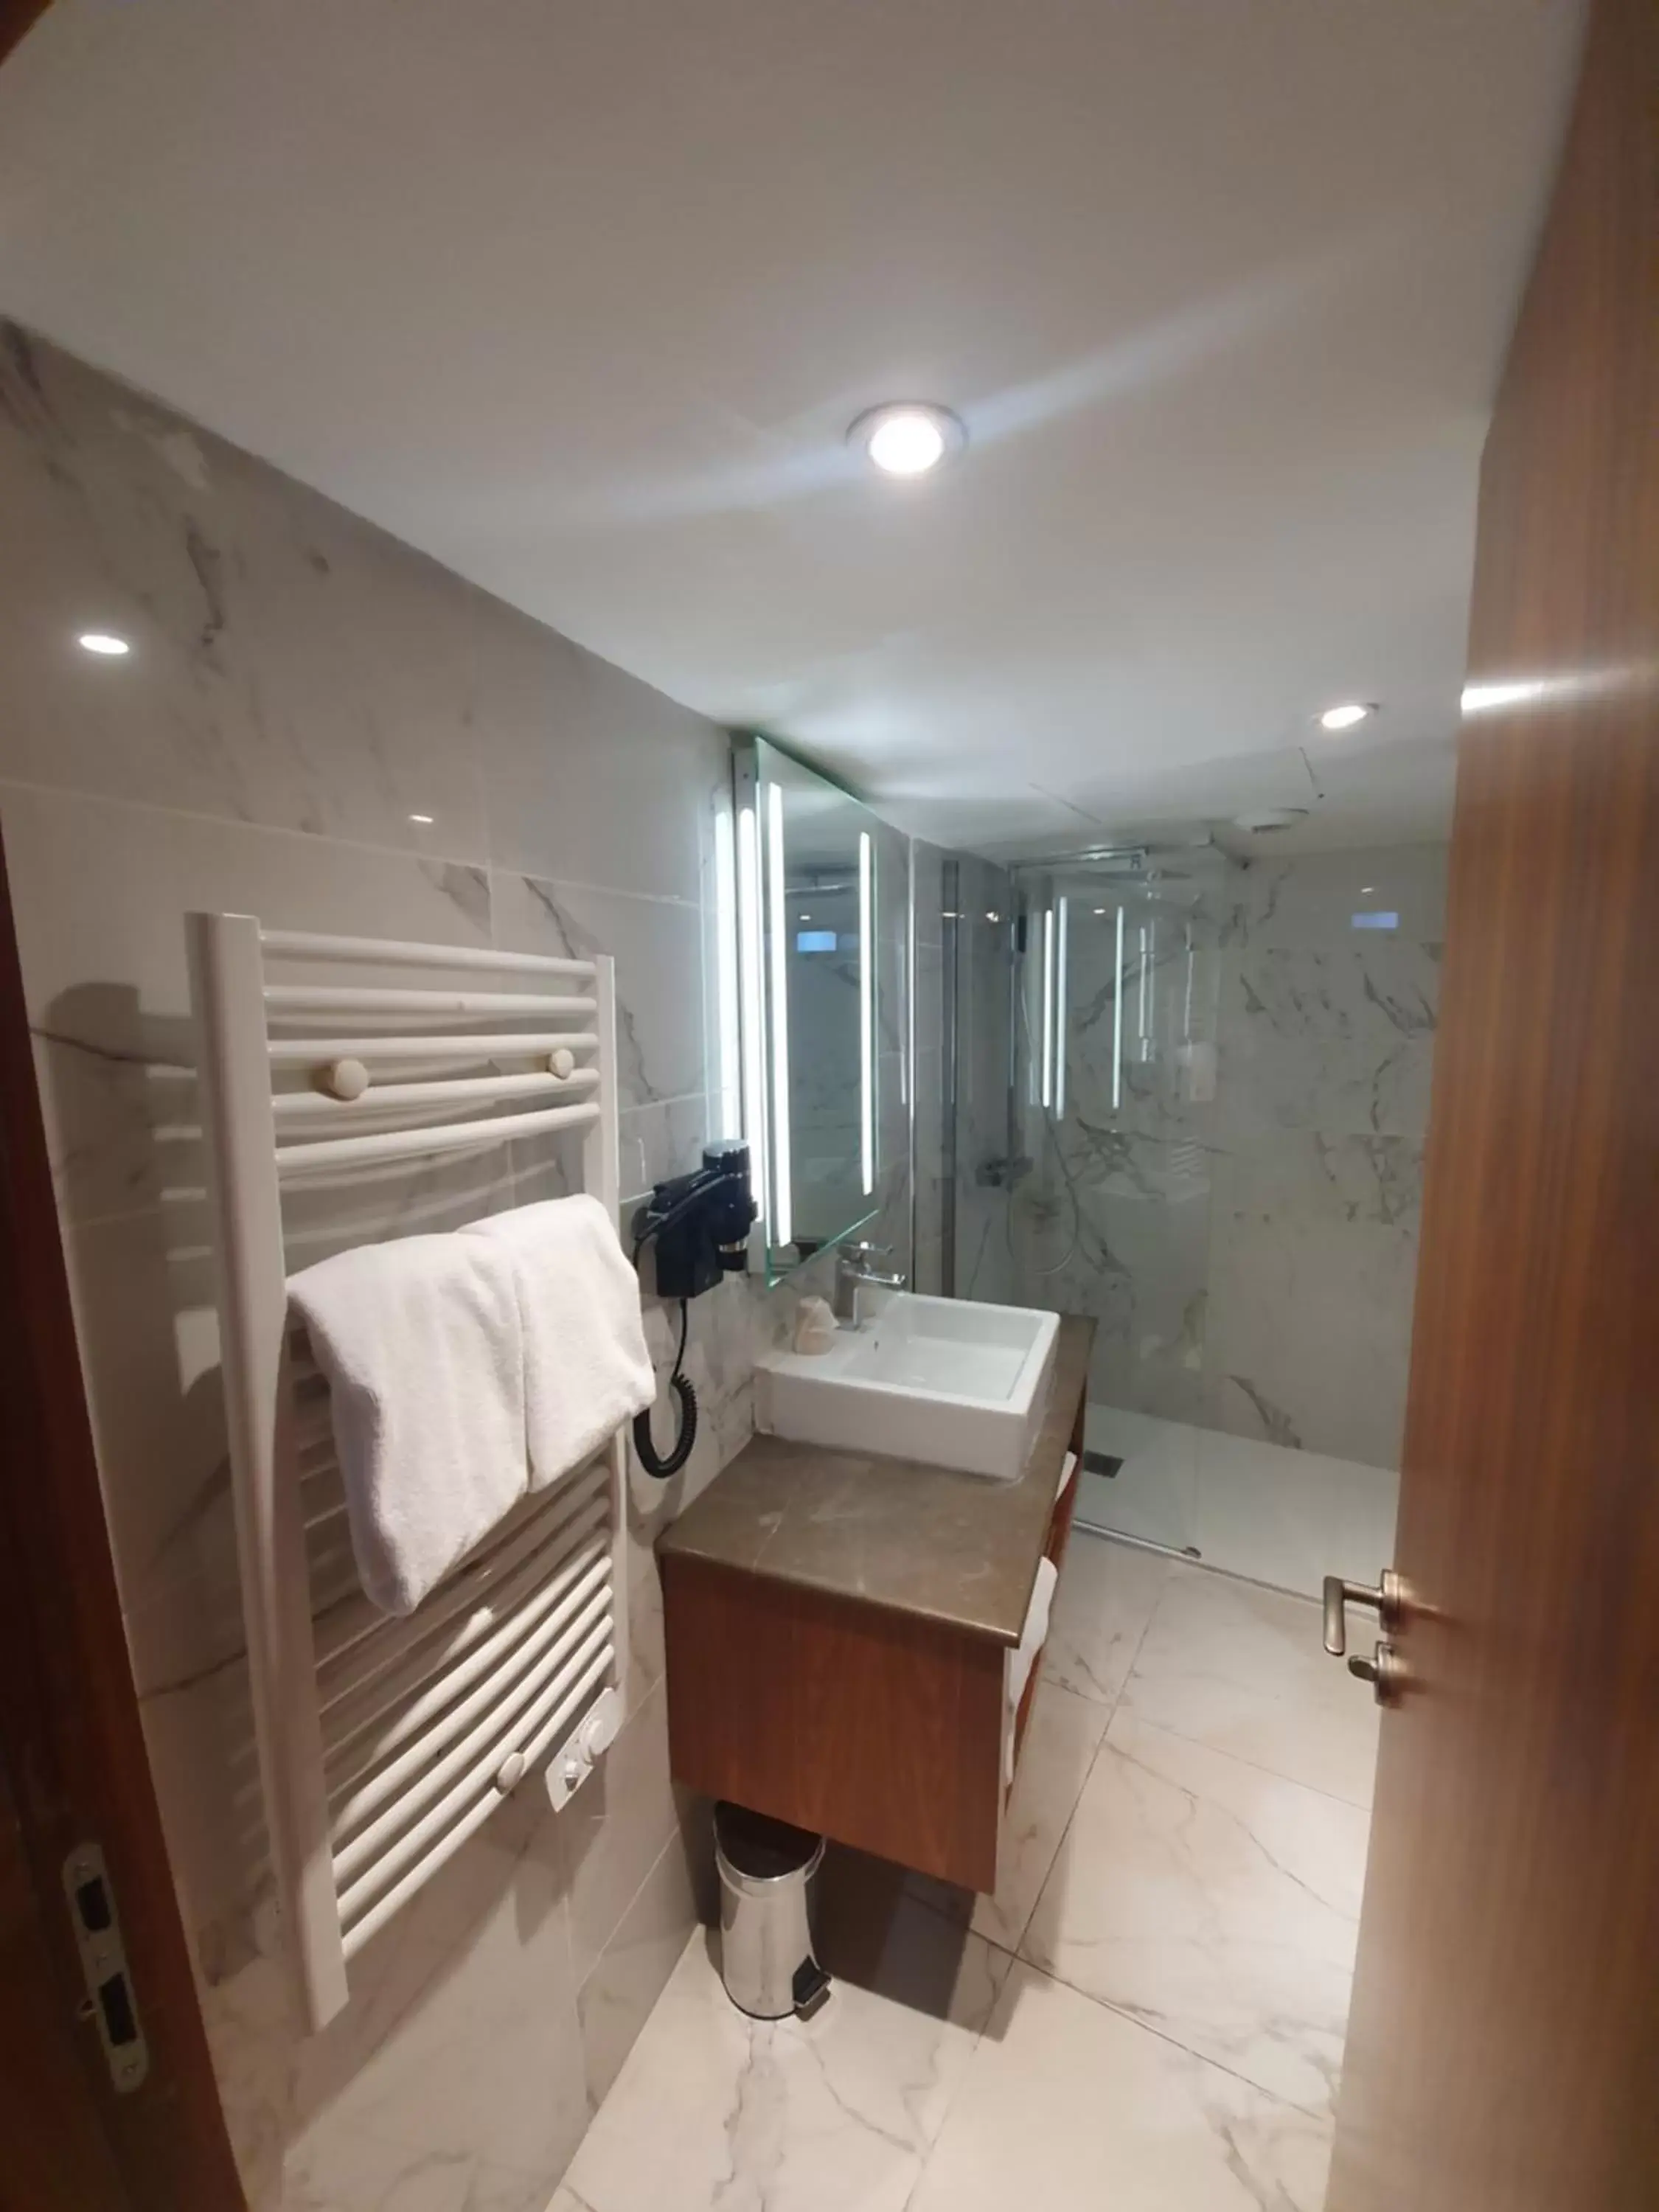 Shower, Bathroom in Le Rhul